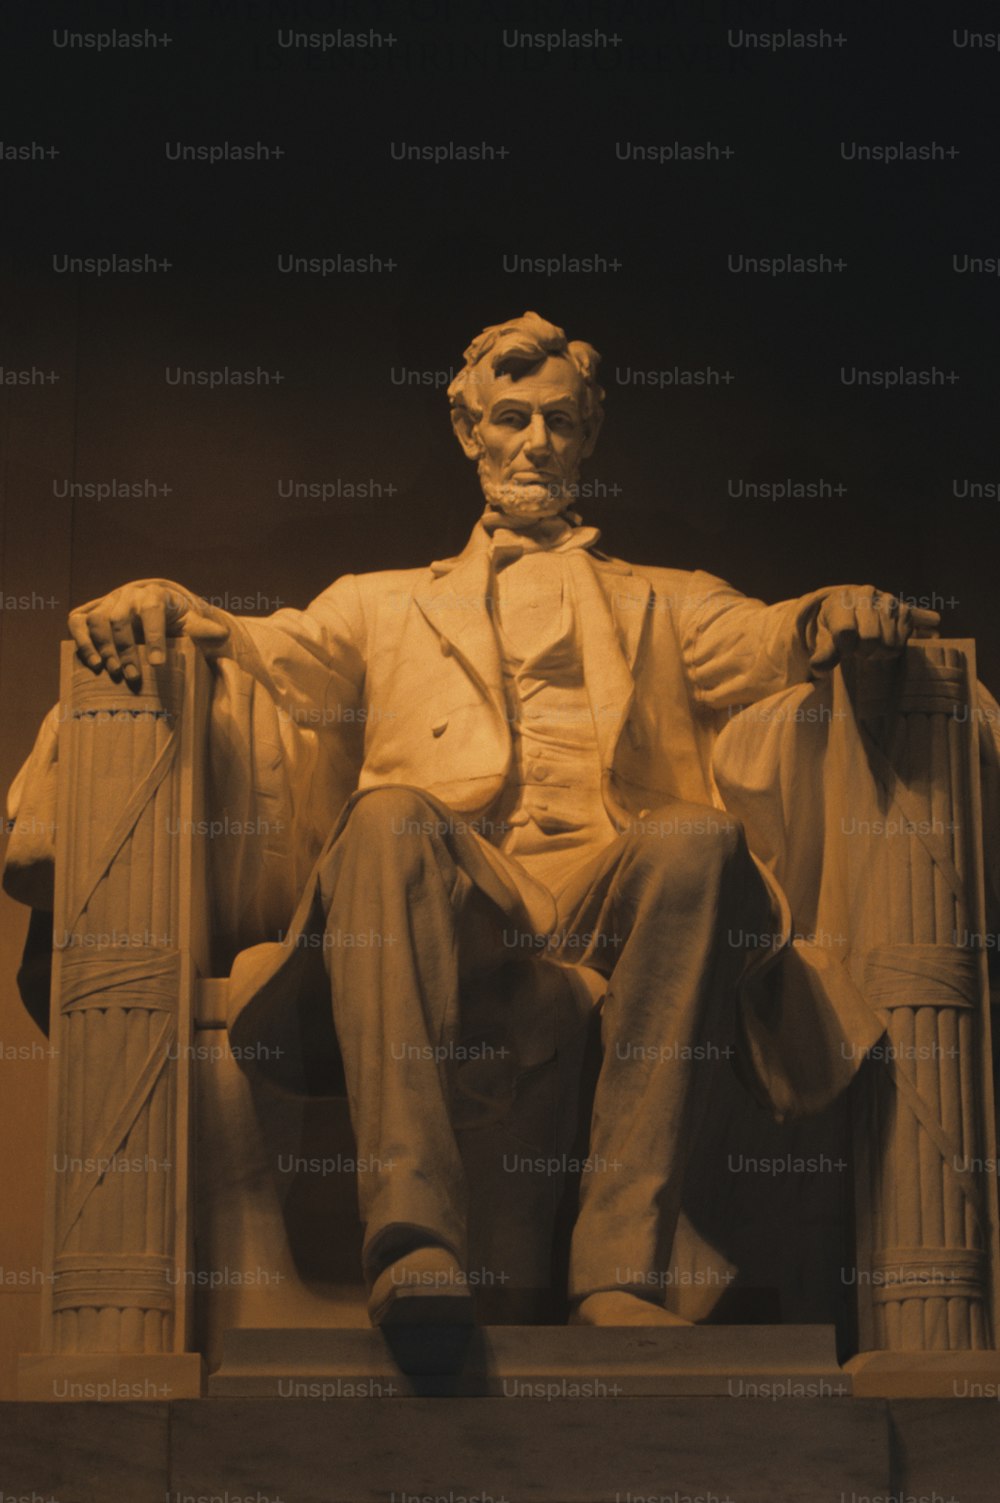 Une statue d’Abraham Lincoln assis sur une chaise